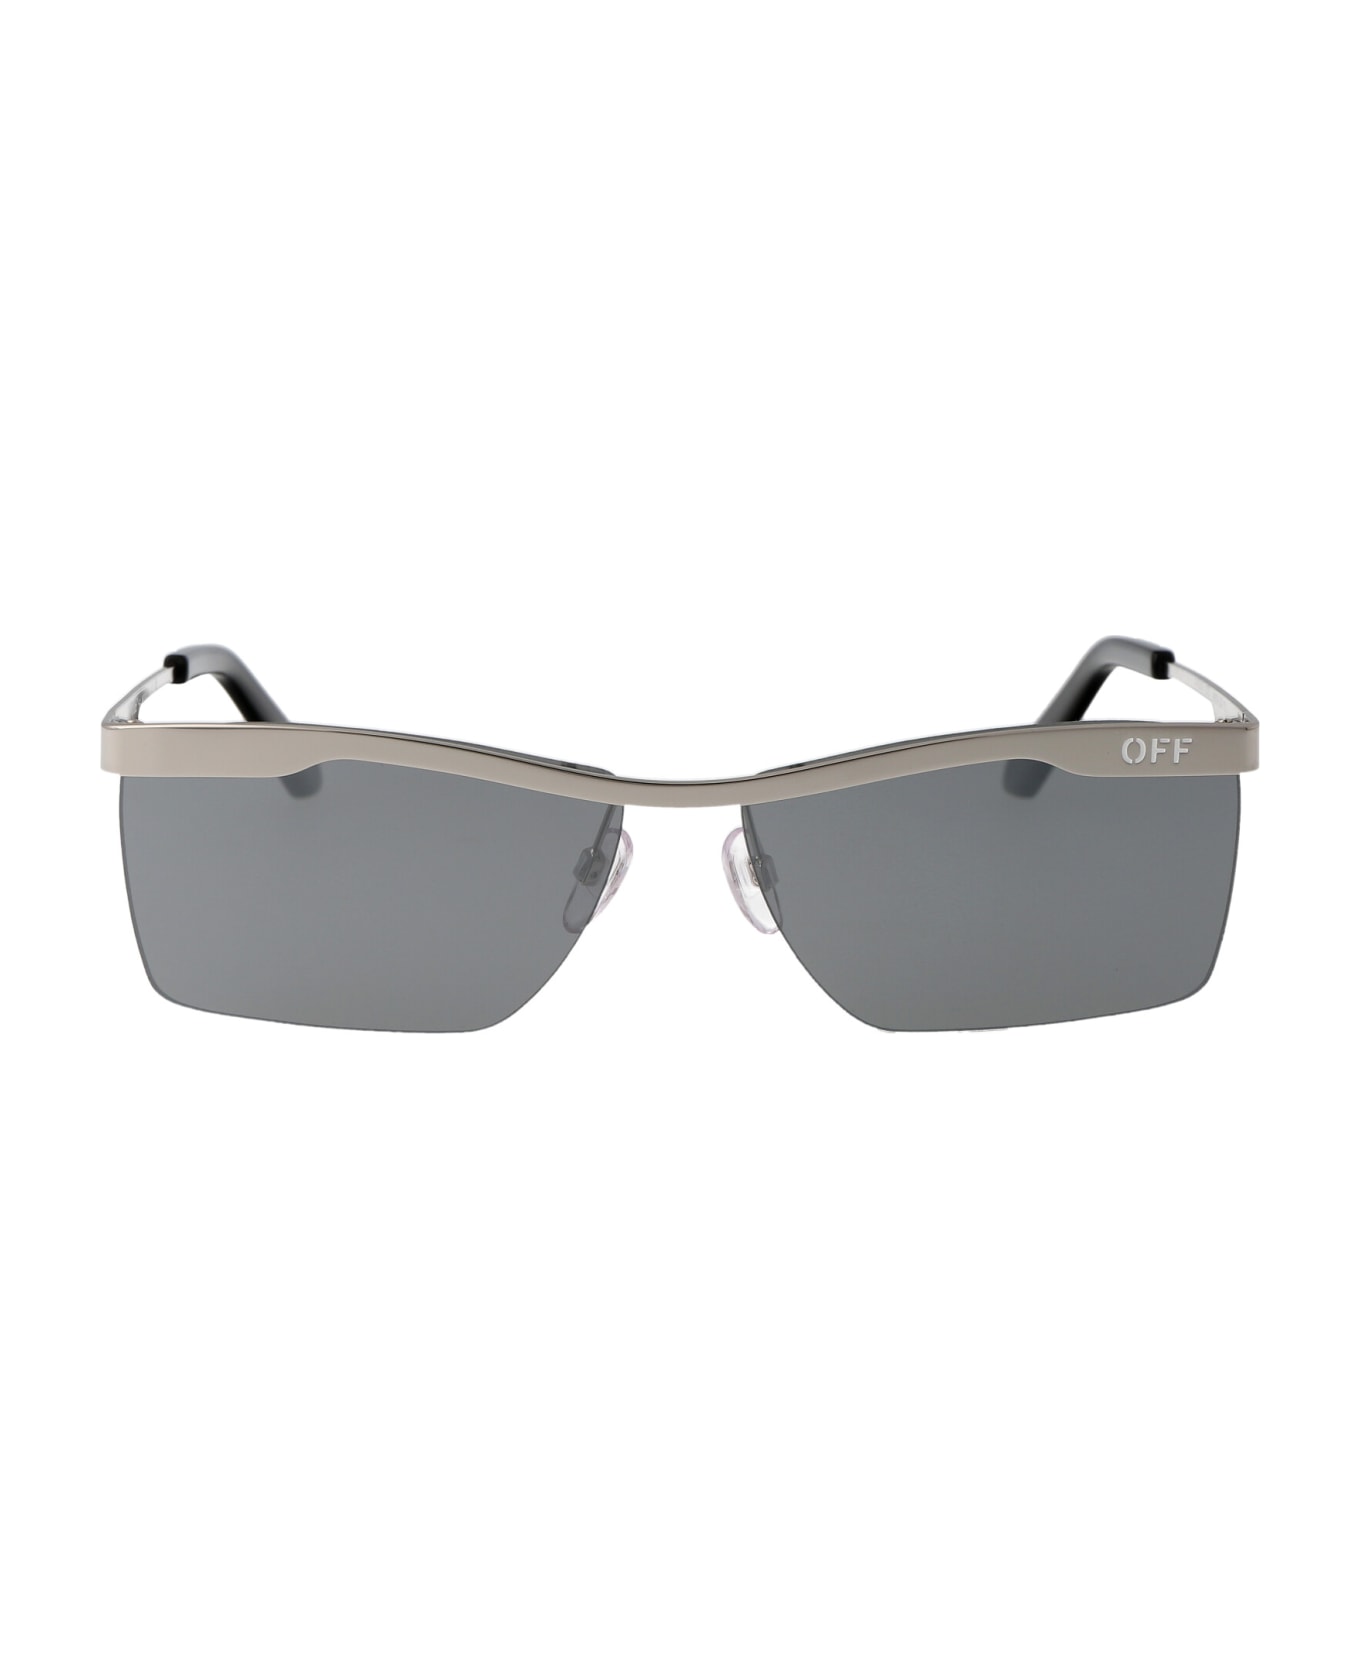 Off-White Rimini Sunglasses - 7272 SILVER サングラス